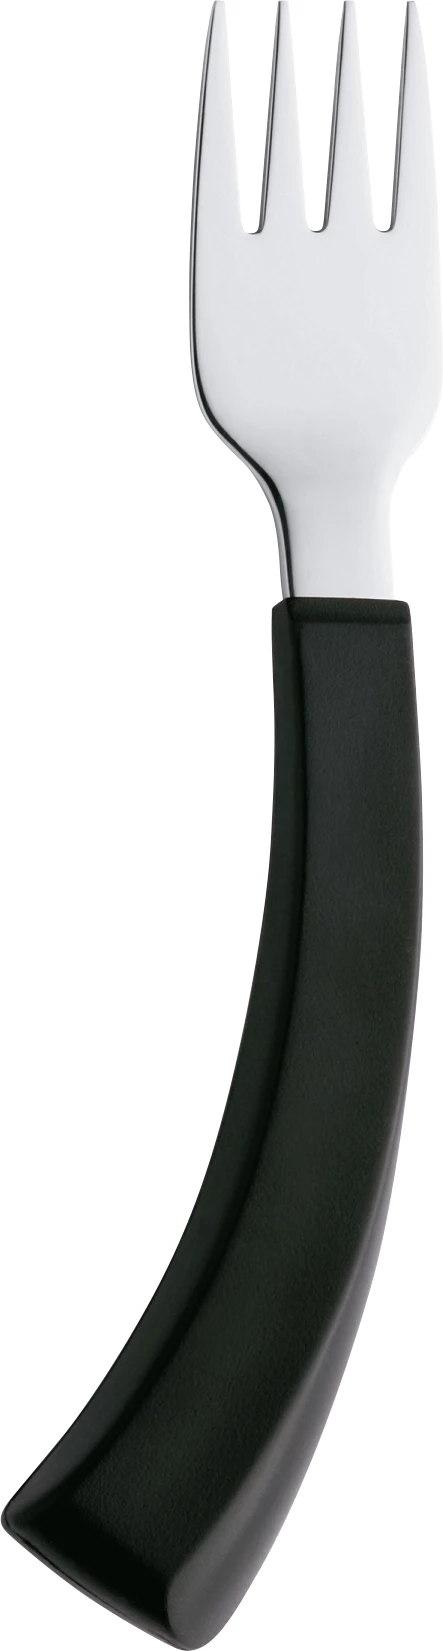 Amefa Select spisegaffel, ergonomisk, højre, 18,4 cm